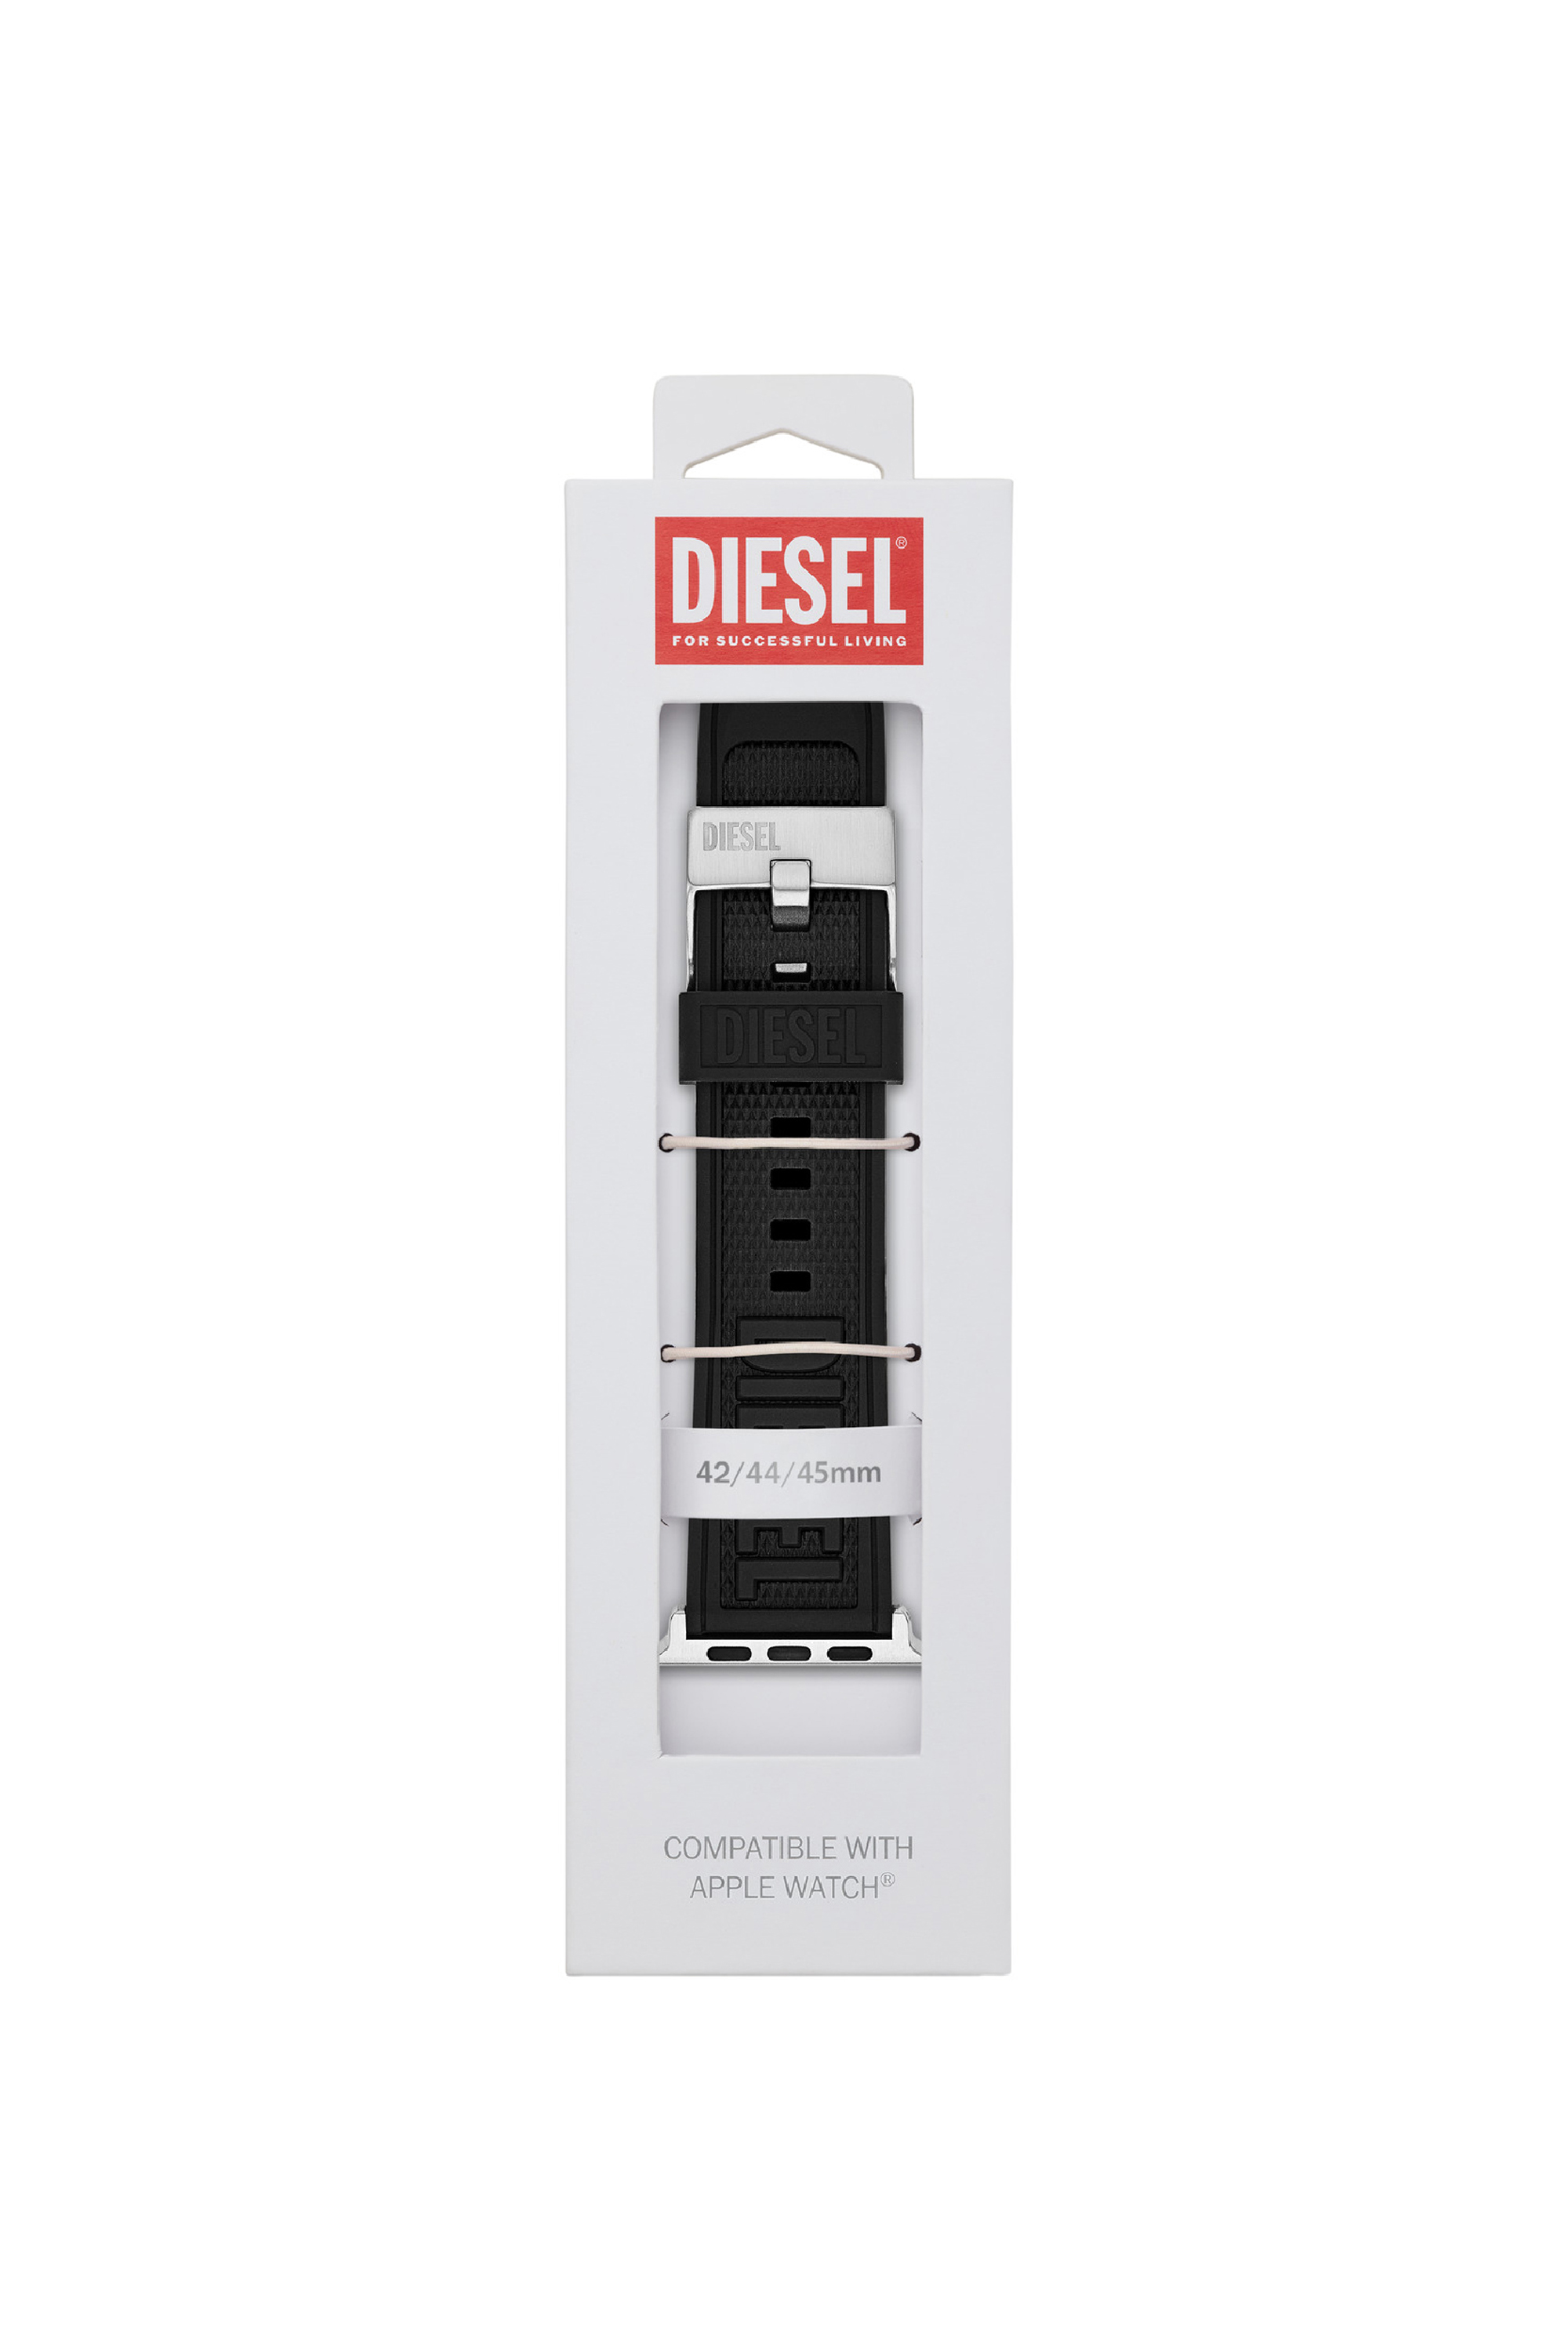 Diesel - DSS0014, Noir - Image 2